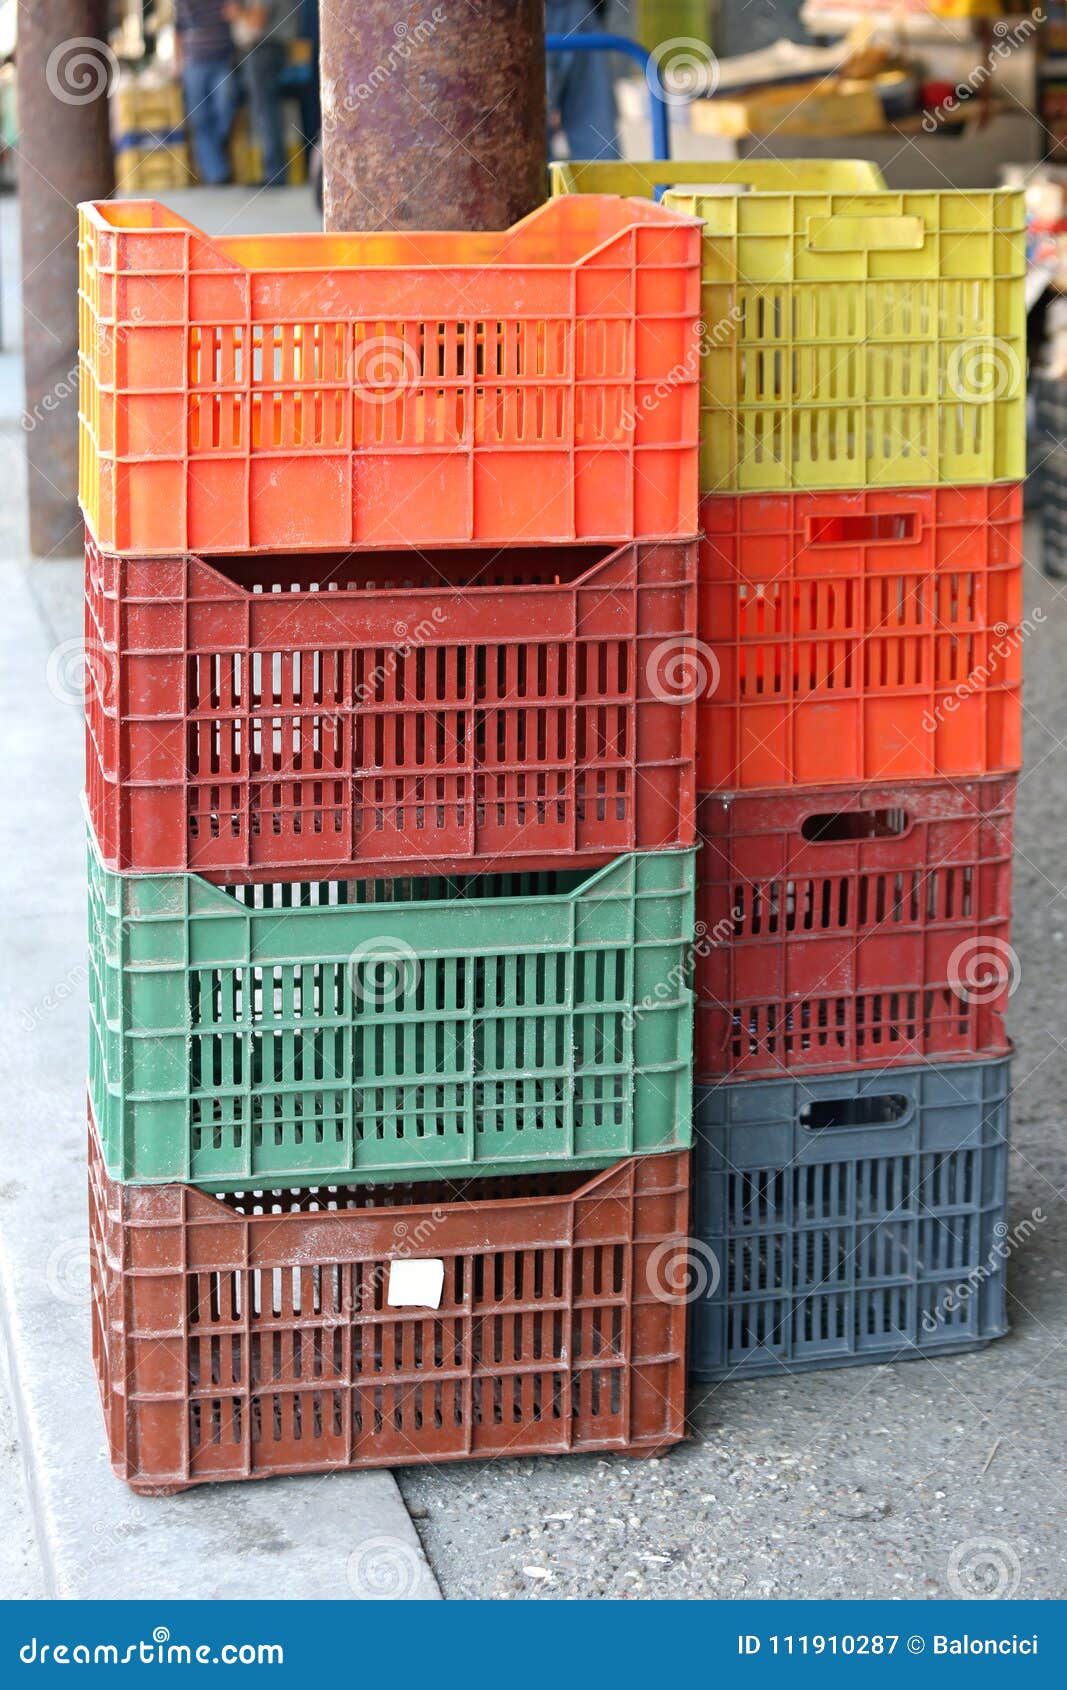 La forma galería combustible Cajones plásticos imagen de archivo. Imagen de carga - 111910287